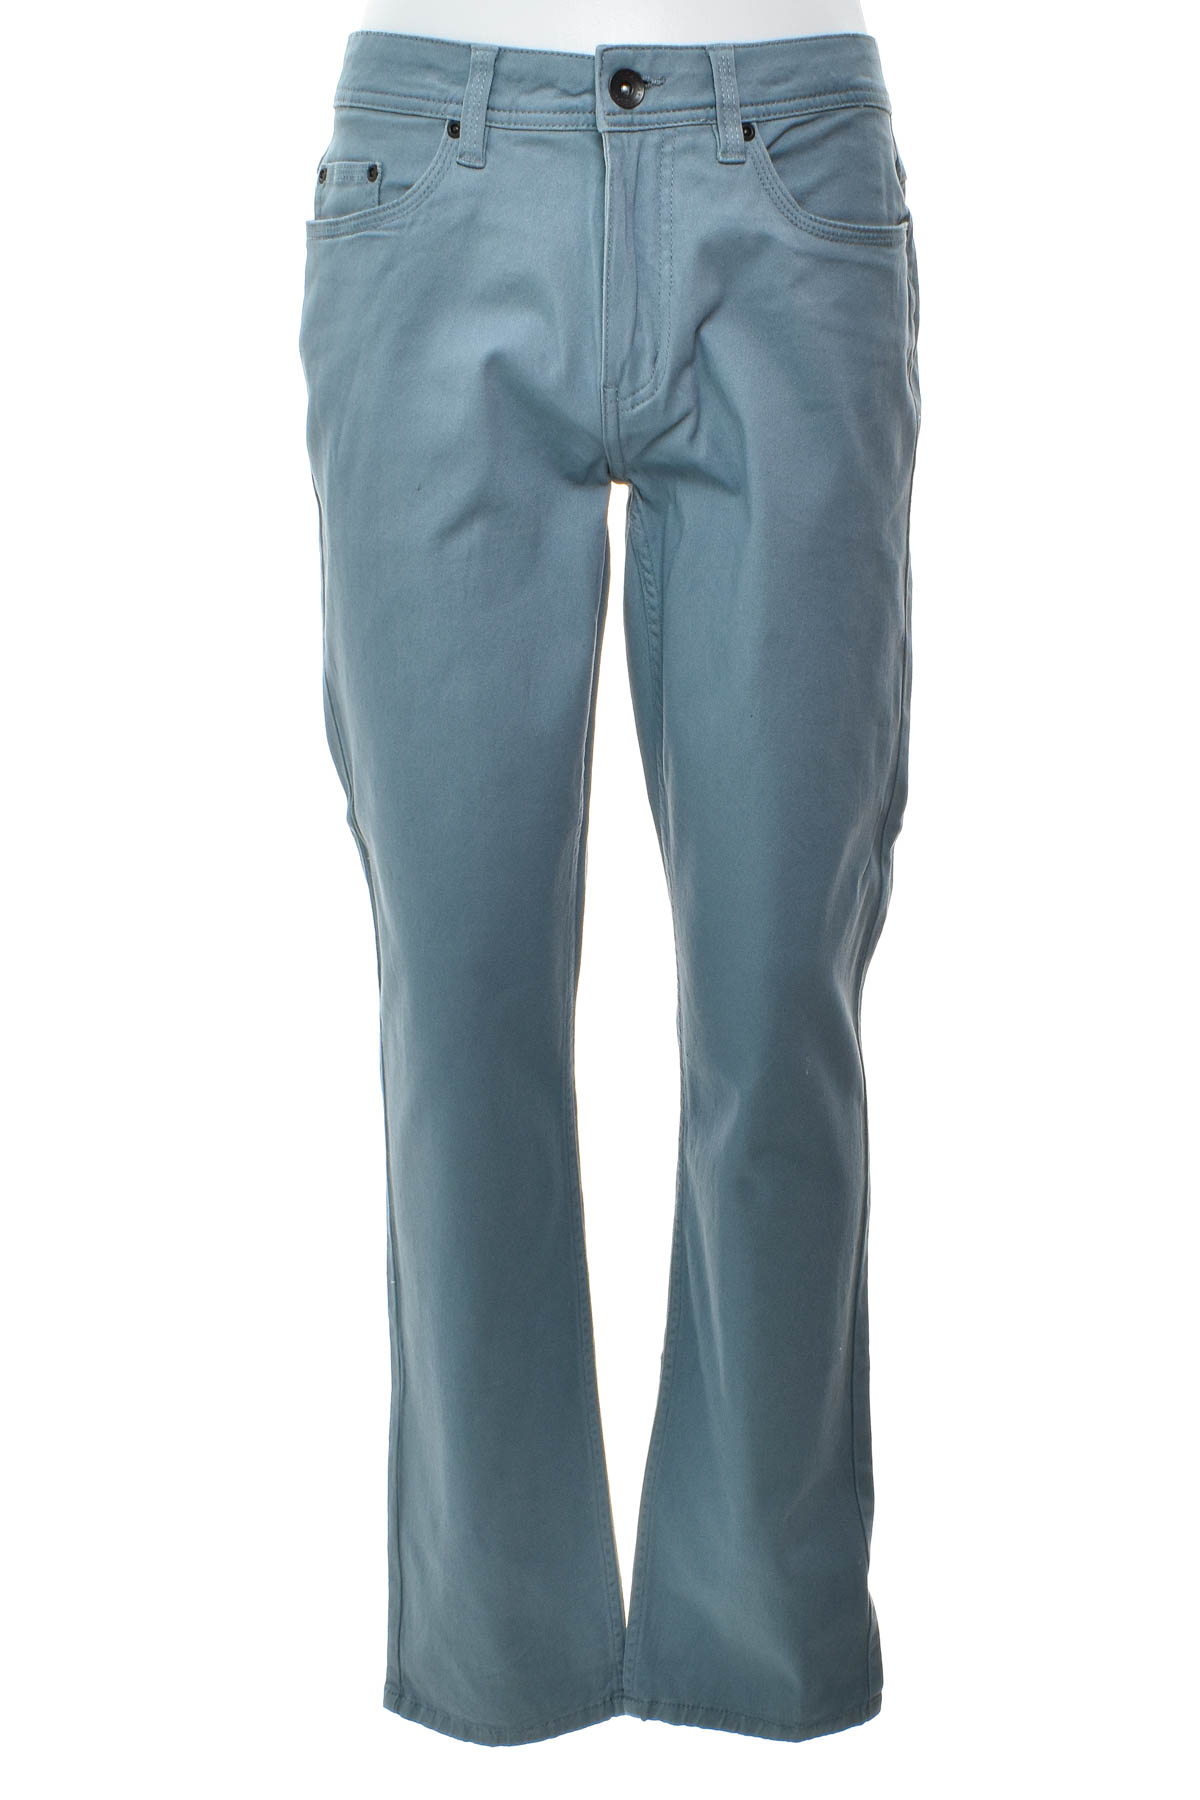 Men's trousers - MILLER&MONROE - 0